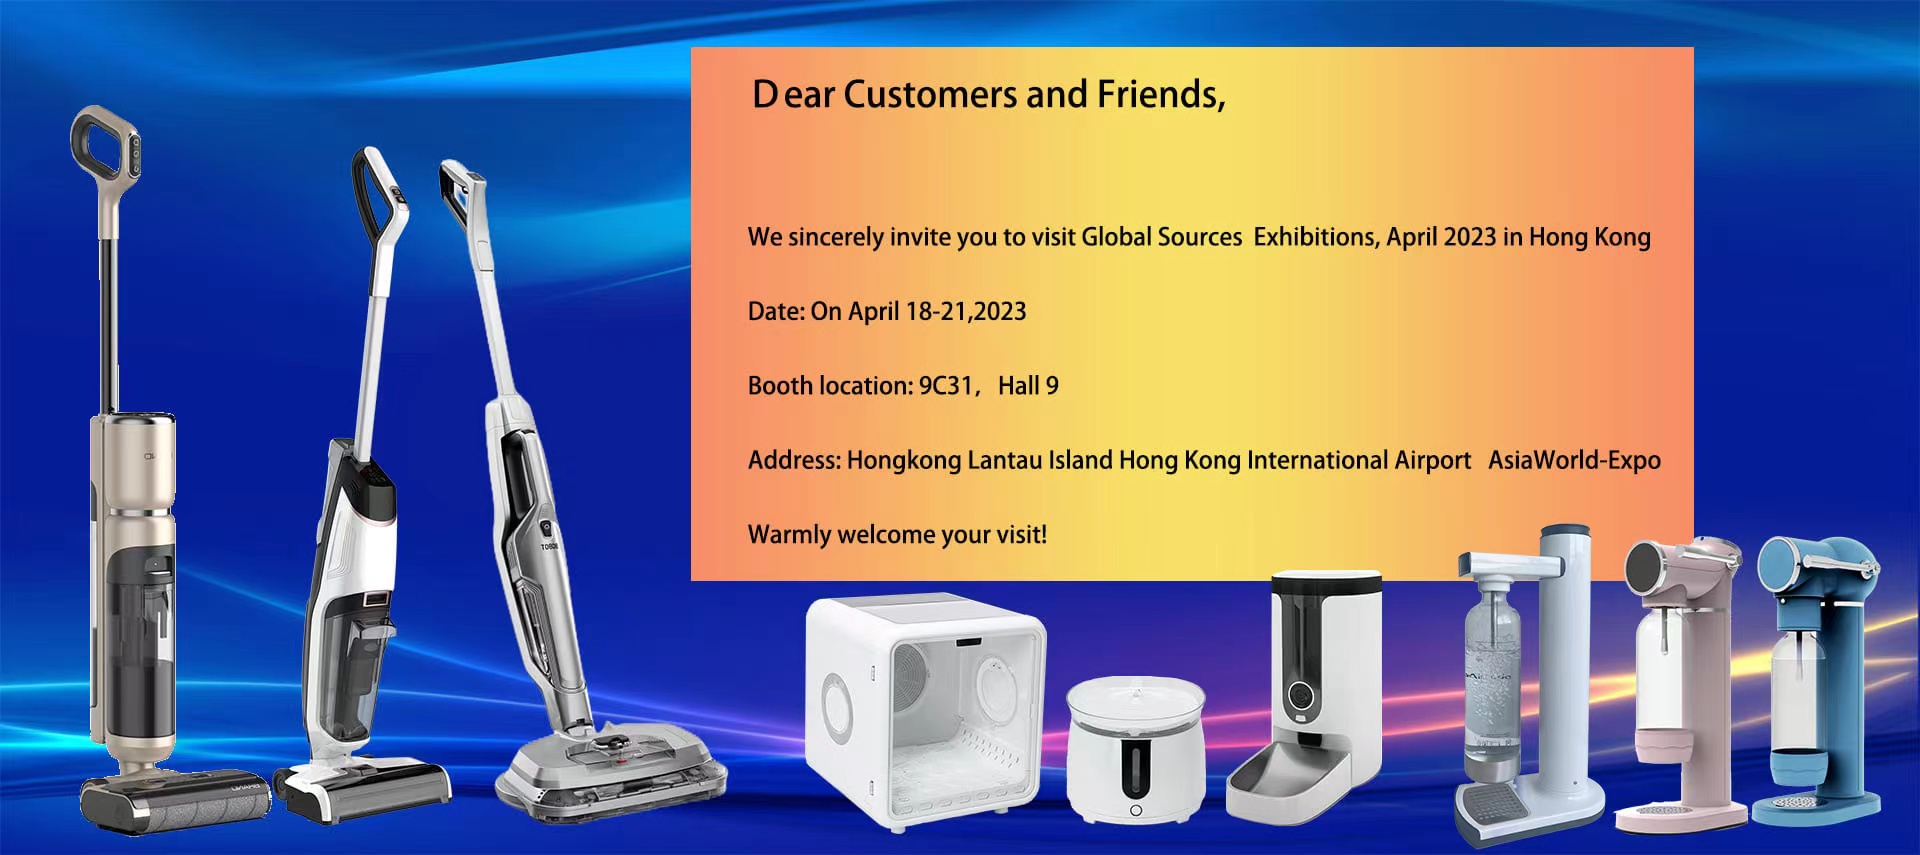 Бенгбу МиФан Технолоджи Ко., Ltd приглашает посетителей ознакомиться с инновационными чистящими средствами на выставке Global Sources в Гонконге - Новости компании - 3